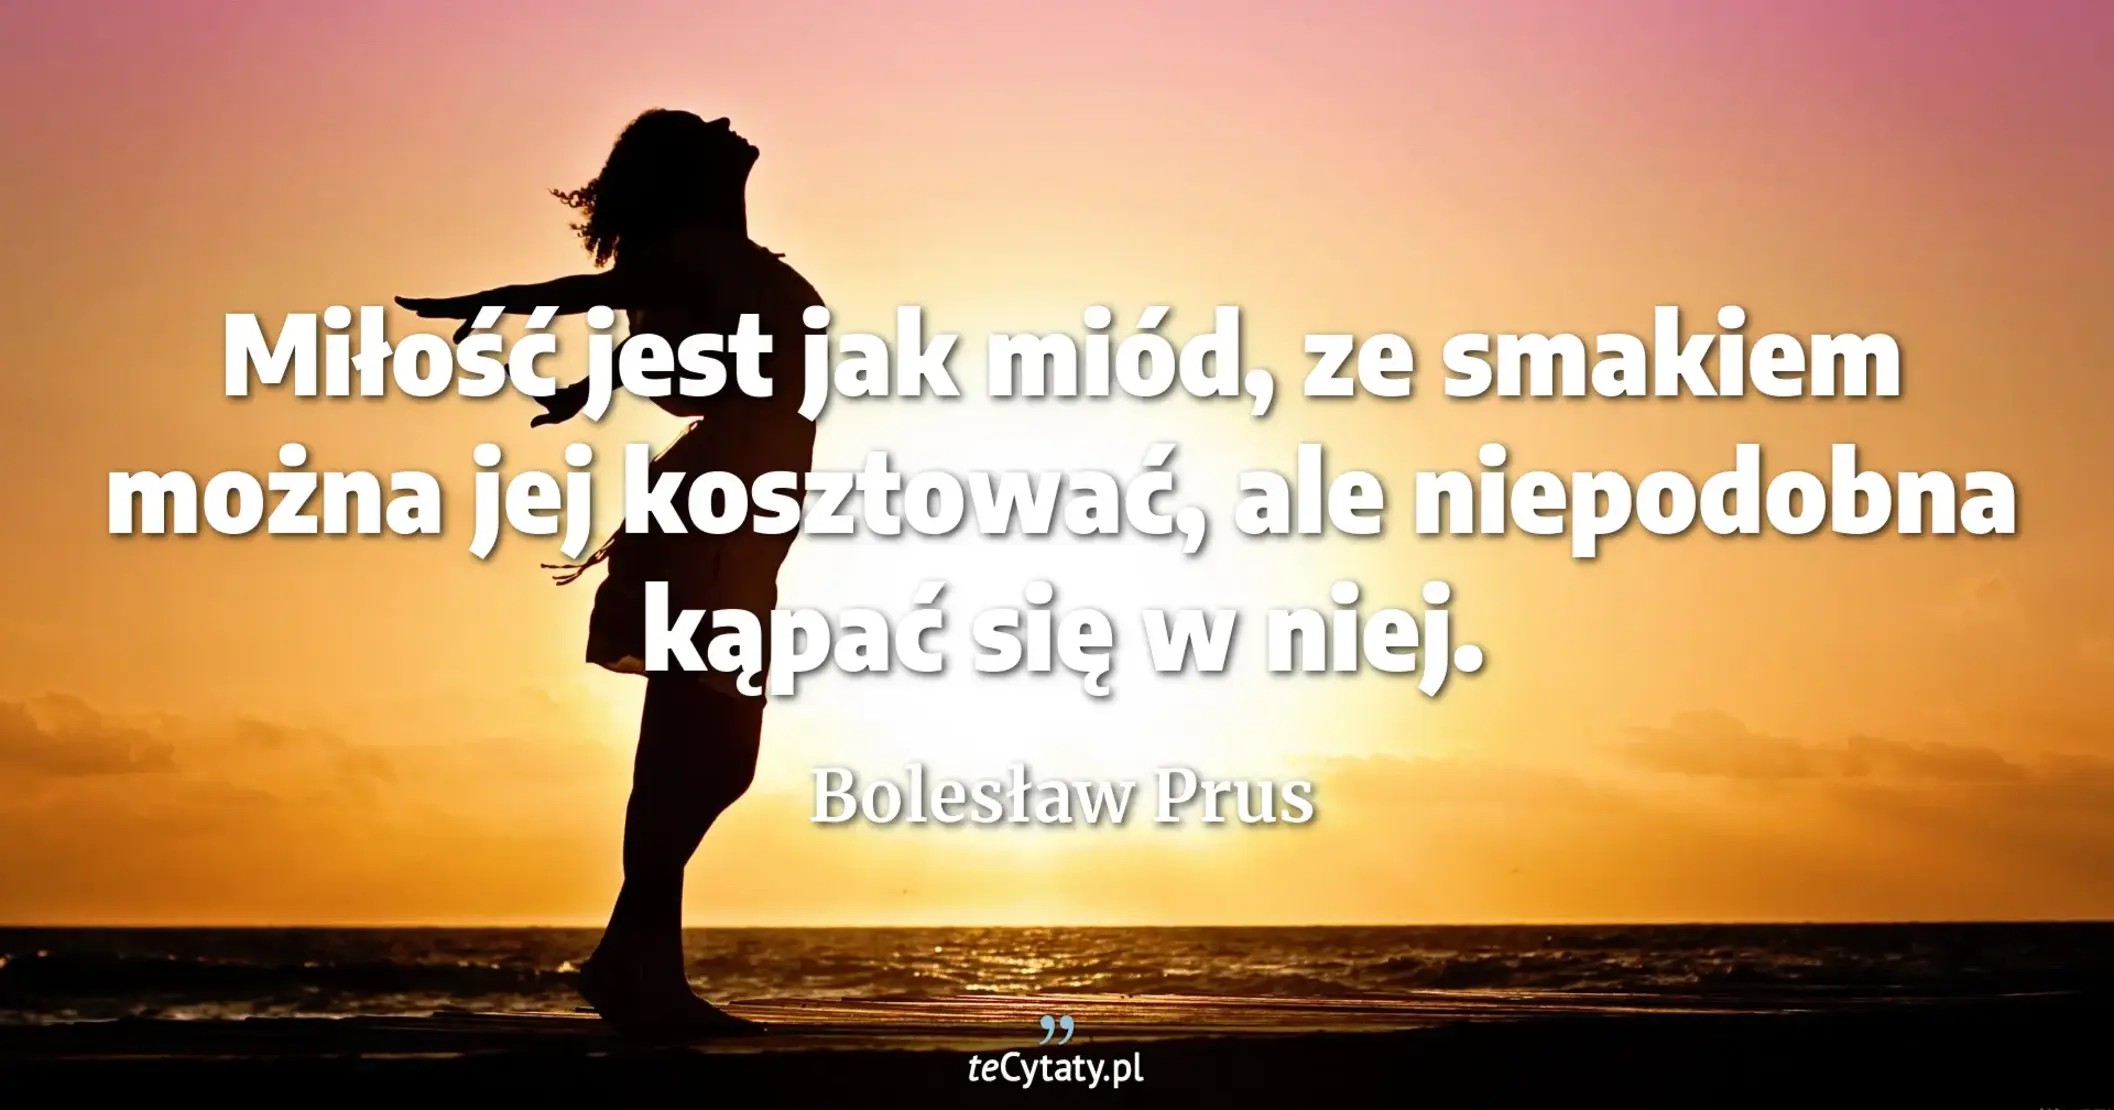 Miłość jest jak miód, ze smakiem można jej kosztować, ale niepodobna kąpać się w niej. - Bolesław Prus